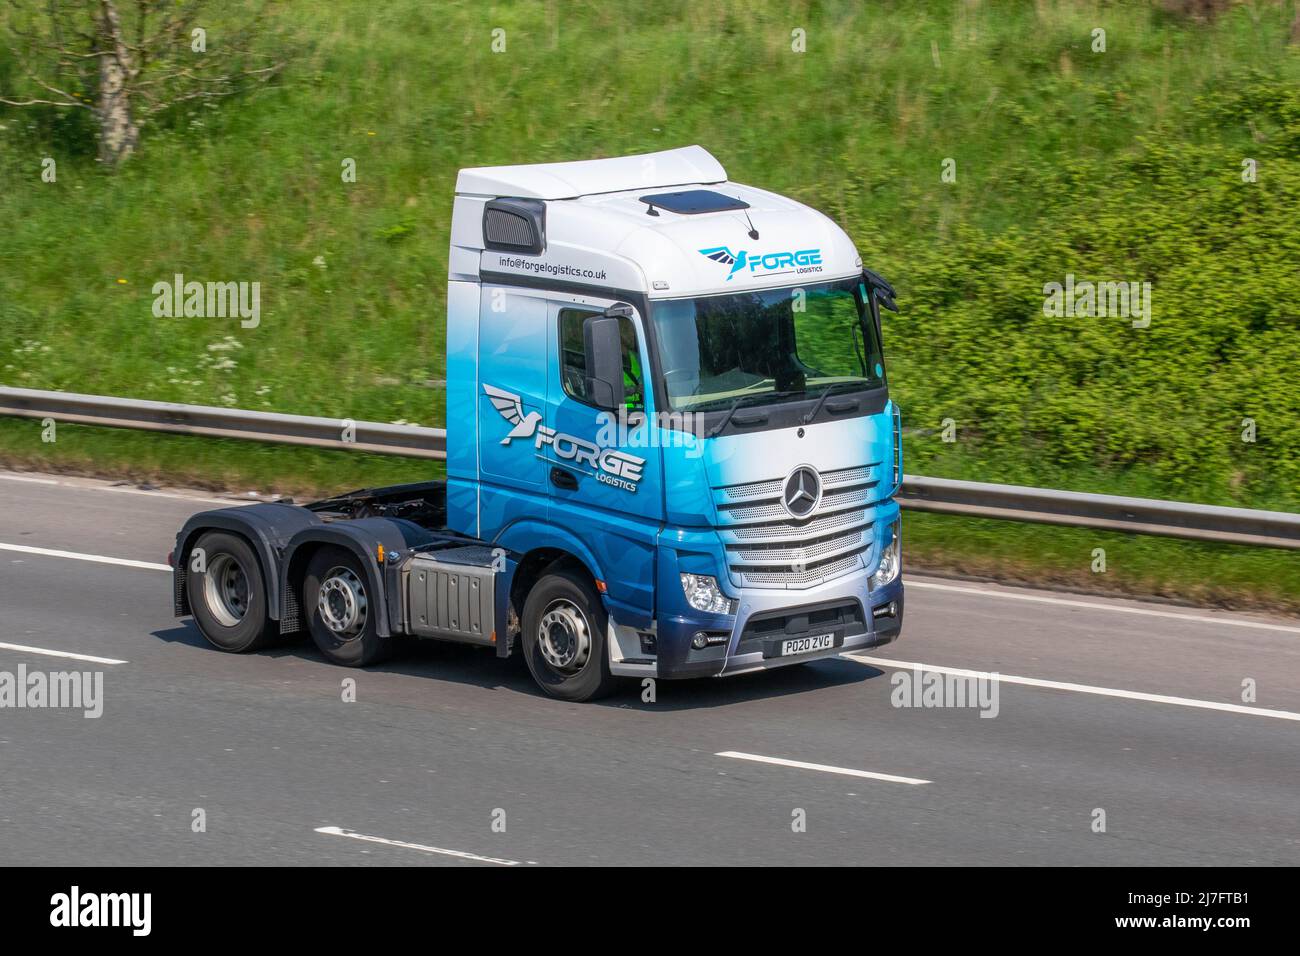 2020 logistique de FORGE bleu blanc Mercedes Benz Actros unité de tracteur ; conduite sur l'autoroute M61, Manchester, Royaume-Uni Banque D'Images